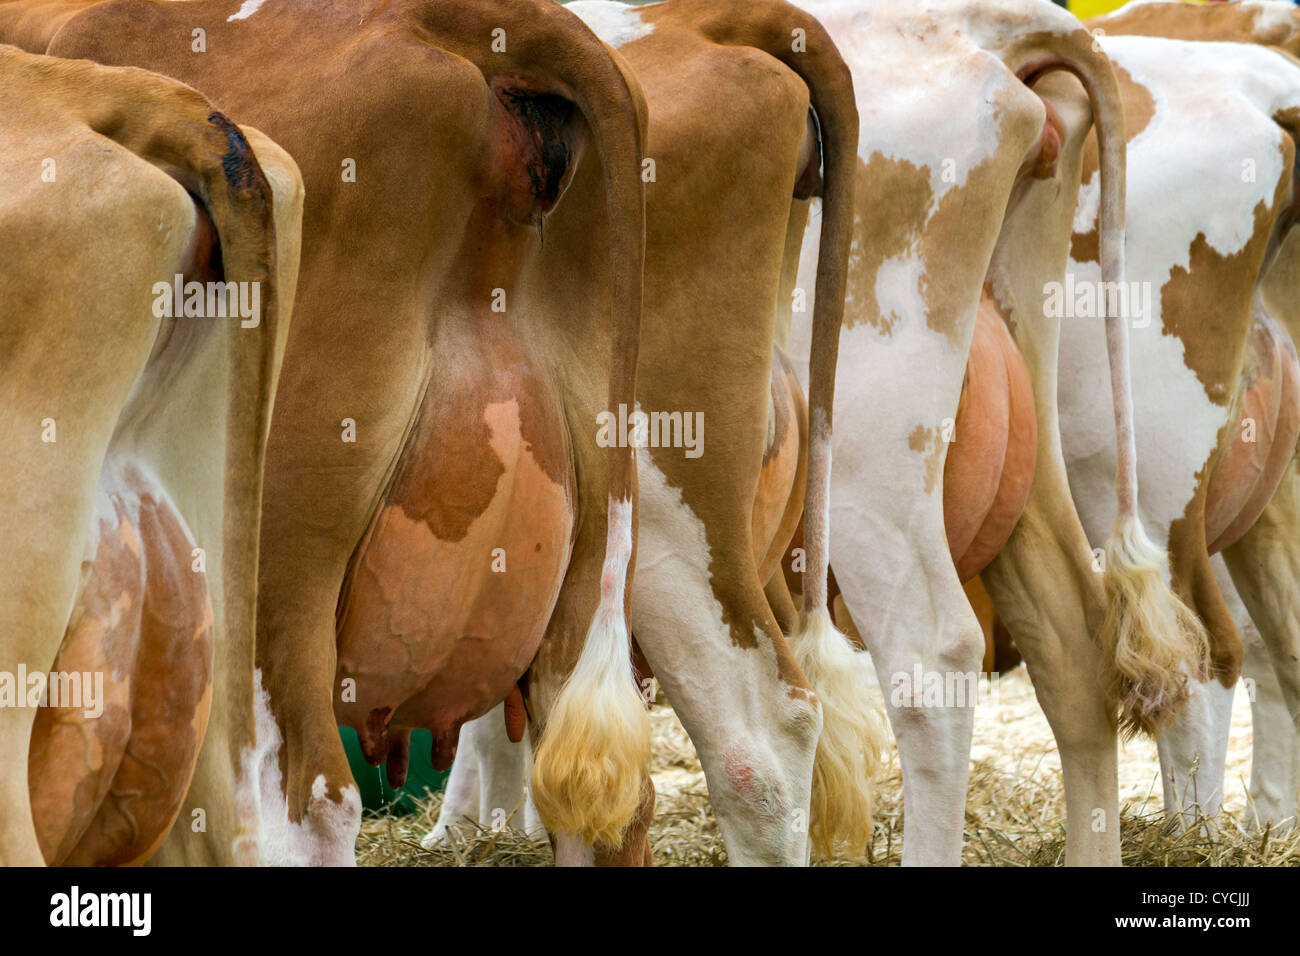 Las ubres de las vacas de ordeño Foto de stock